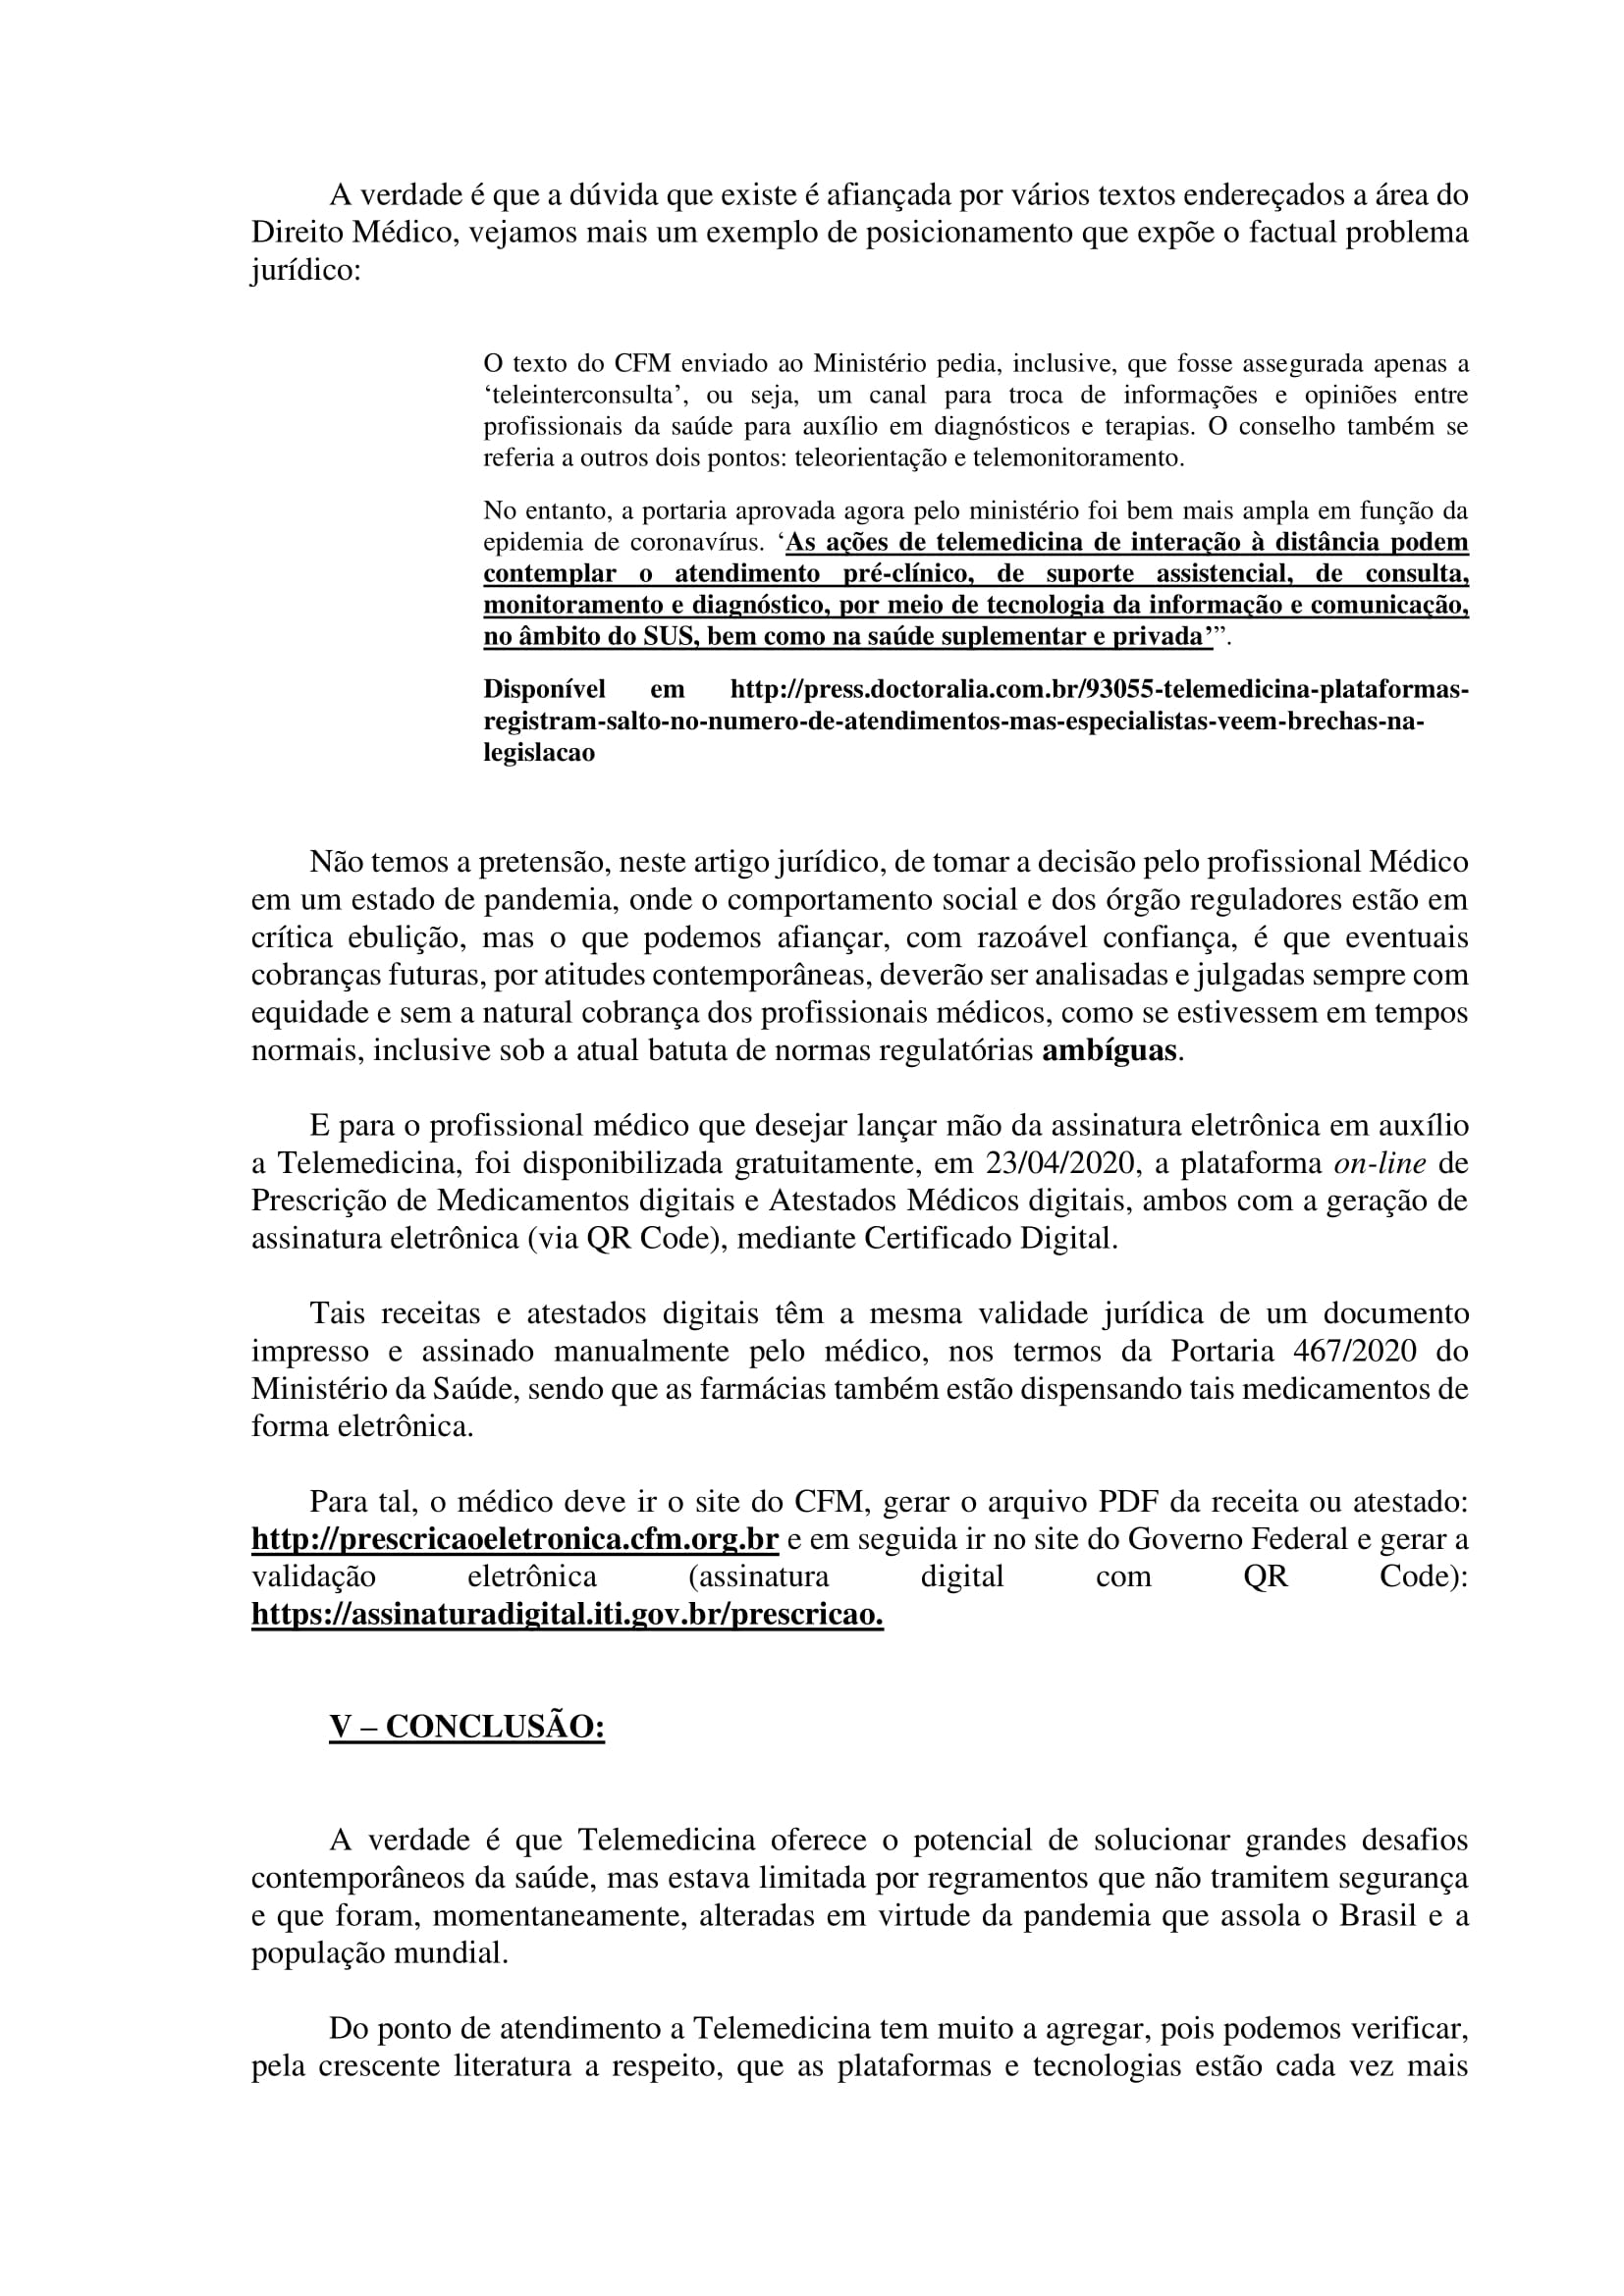 Artigo sobre Telemedicina e suas implicações regulatórias - Tiago Torres-13